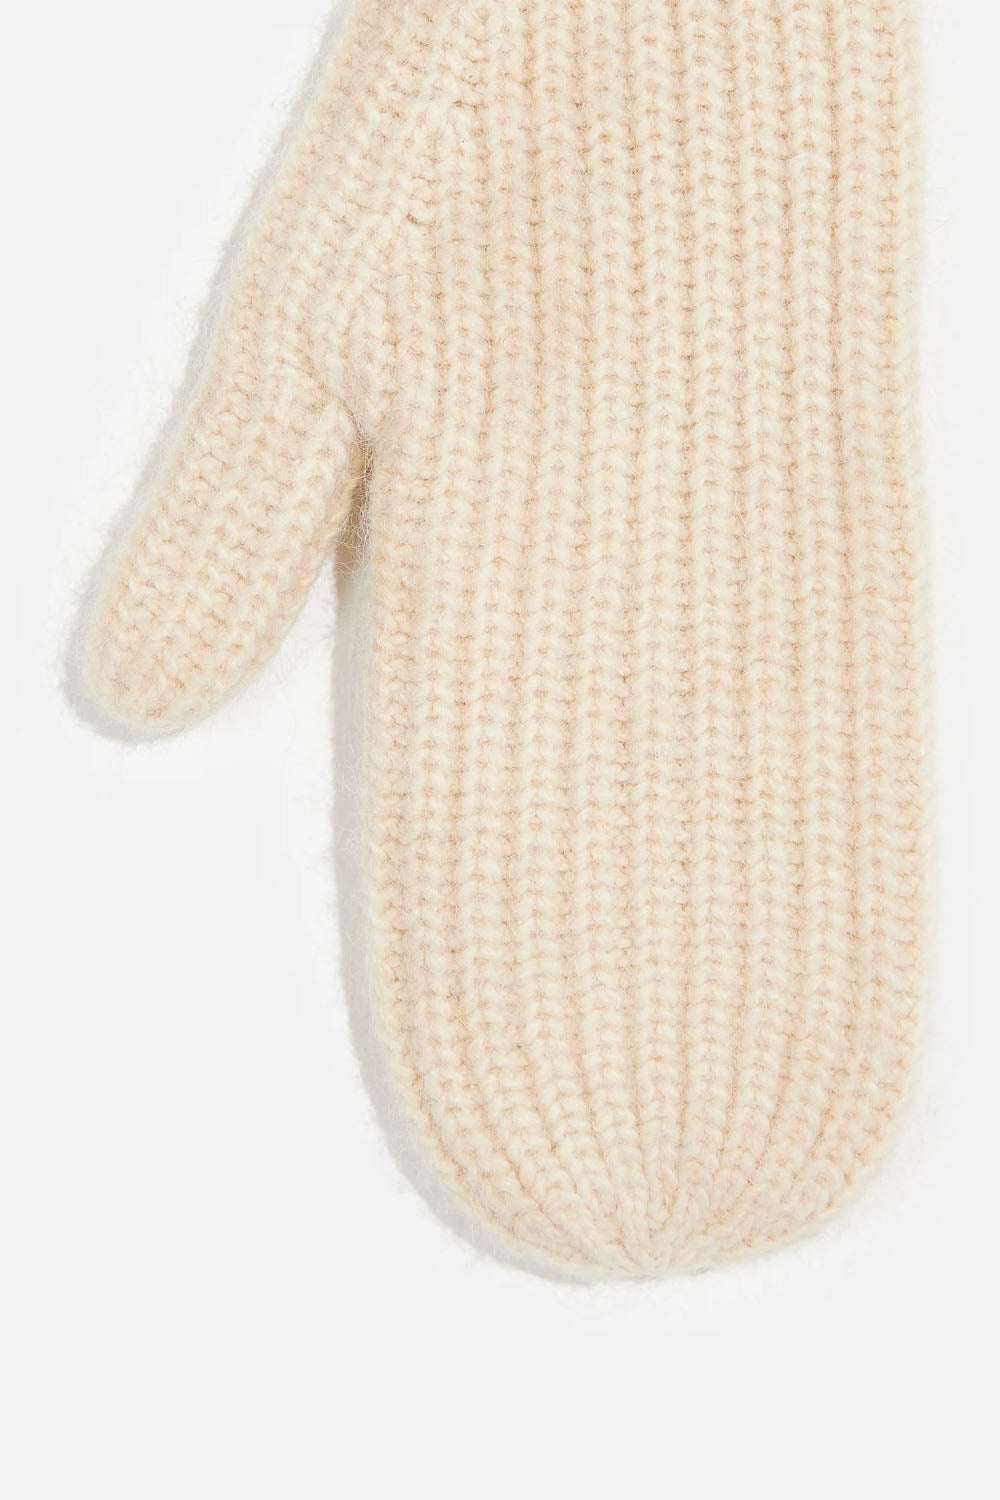 Bellerose - Garmo Gloves: Natural